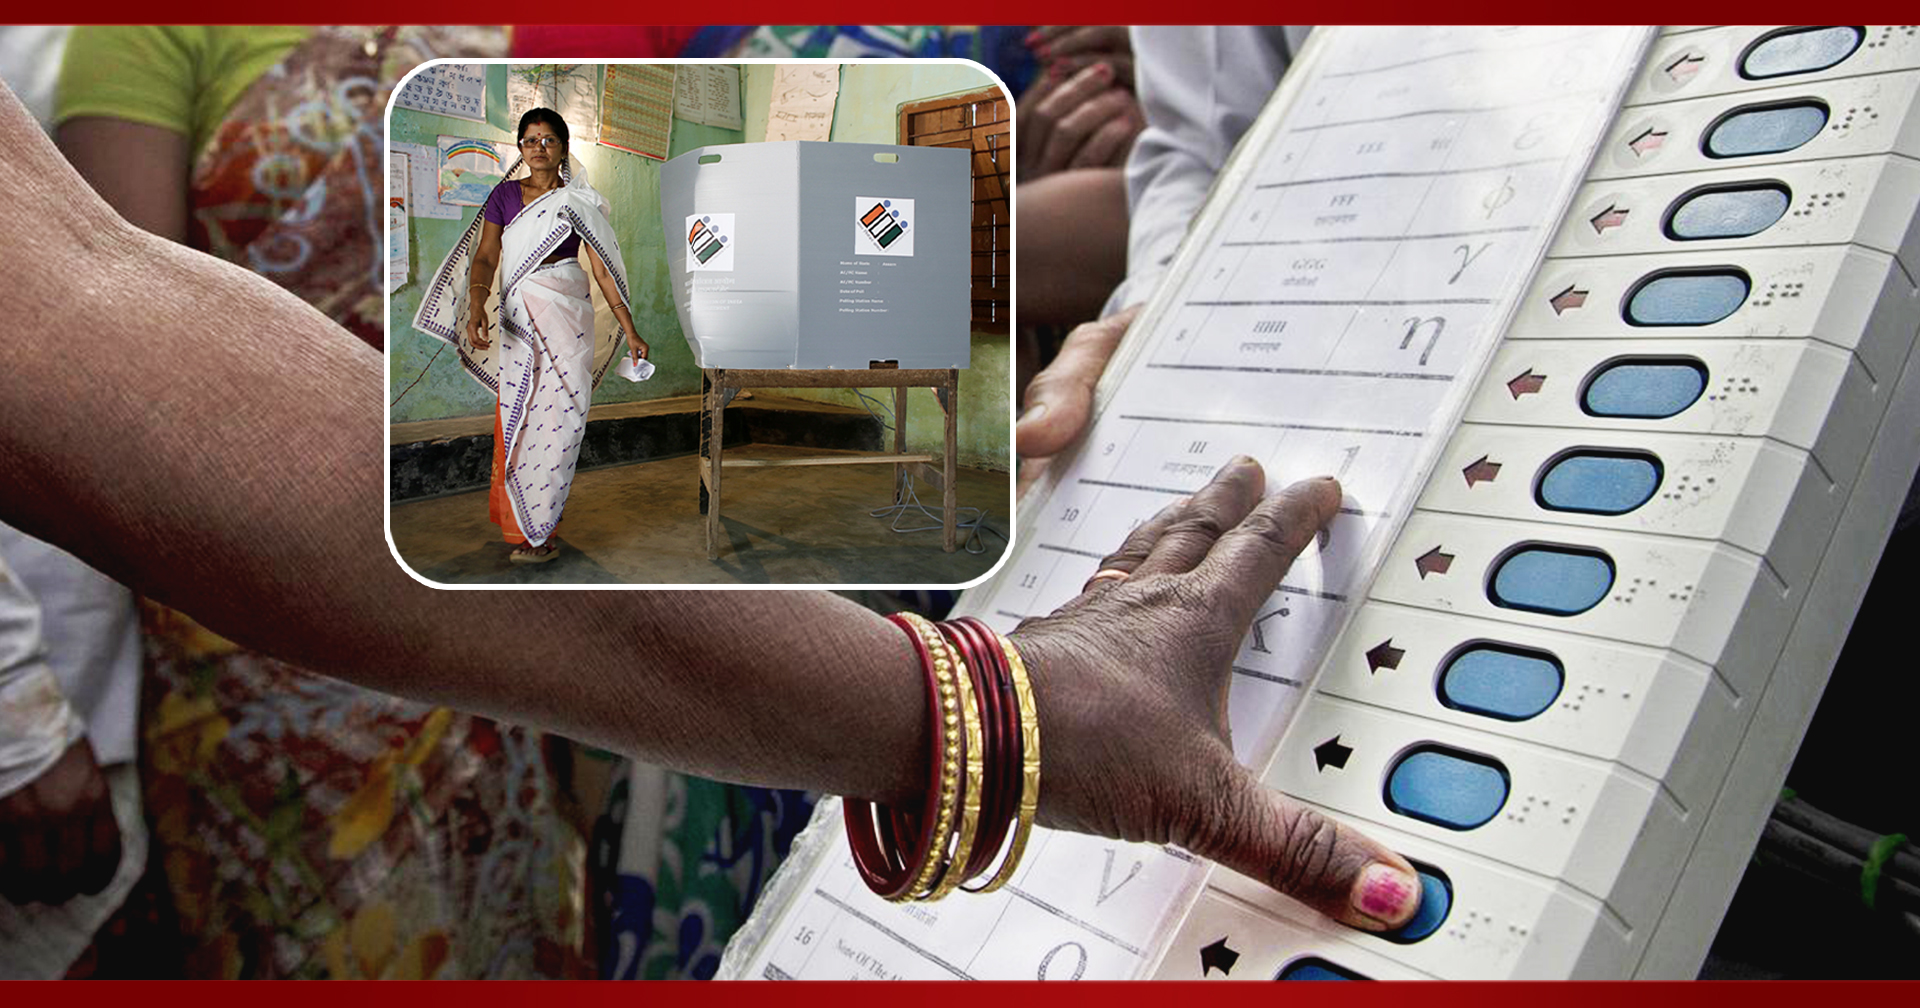 ทำไมเลือกตั้งอินเดียนับคะแนนเสร็จภายใน 4 ชั่วโมง แม้ผู้มีสิทธิเลือกตั้งมีมหาศาล